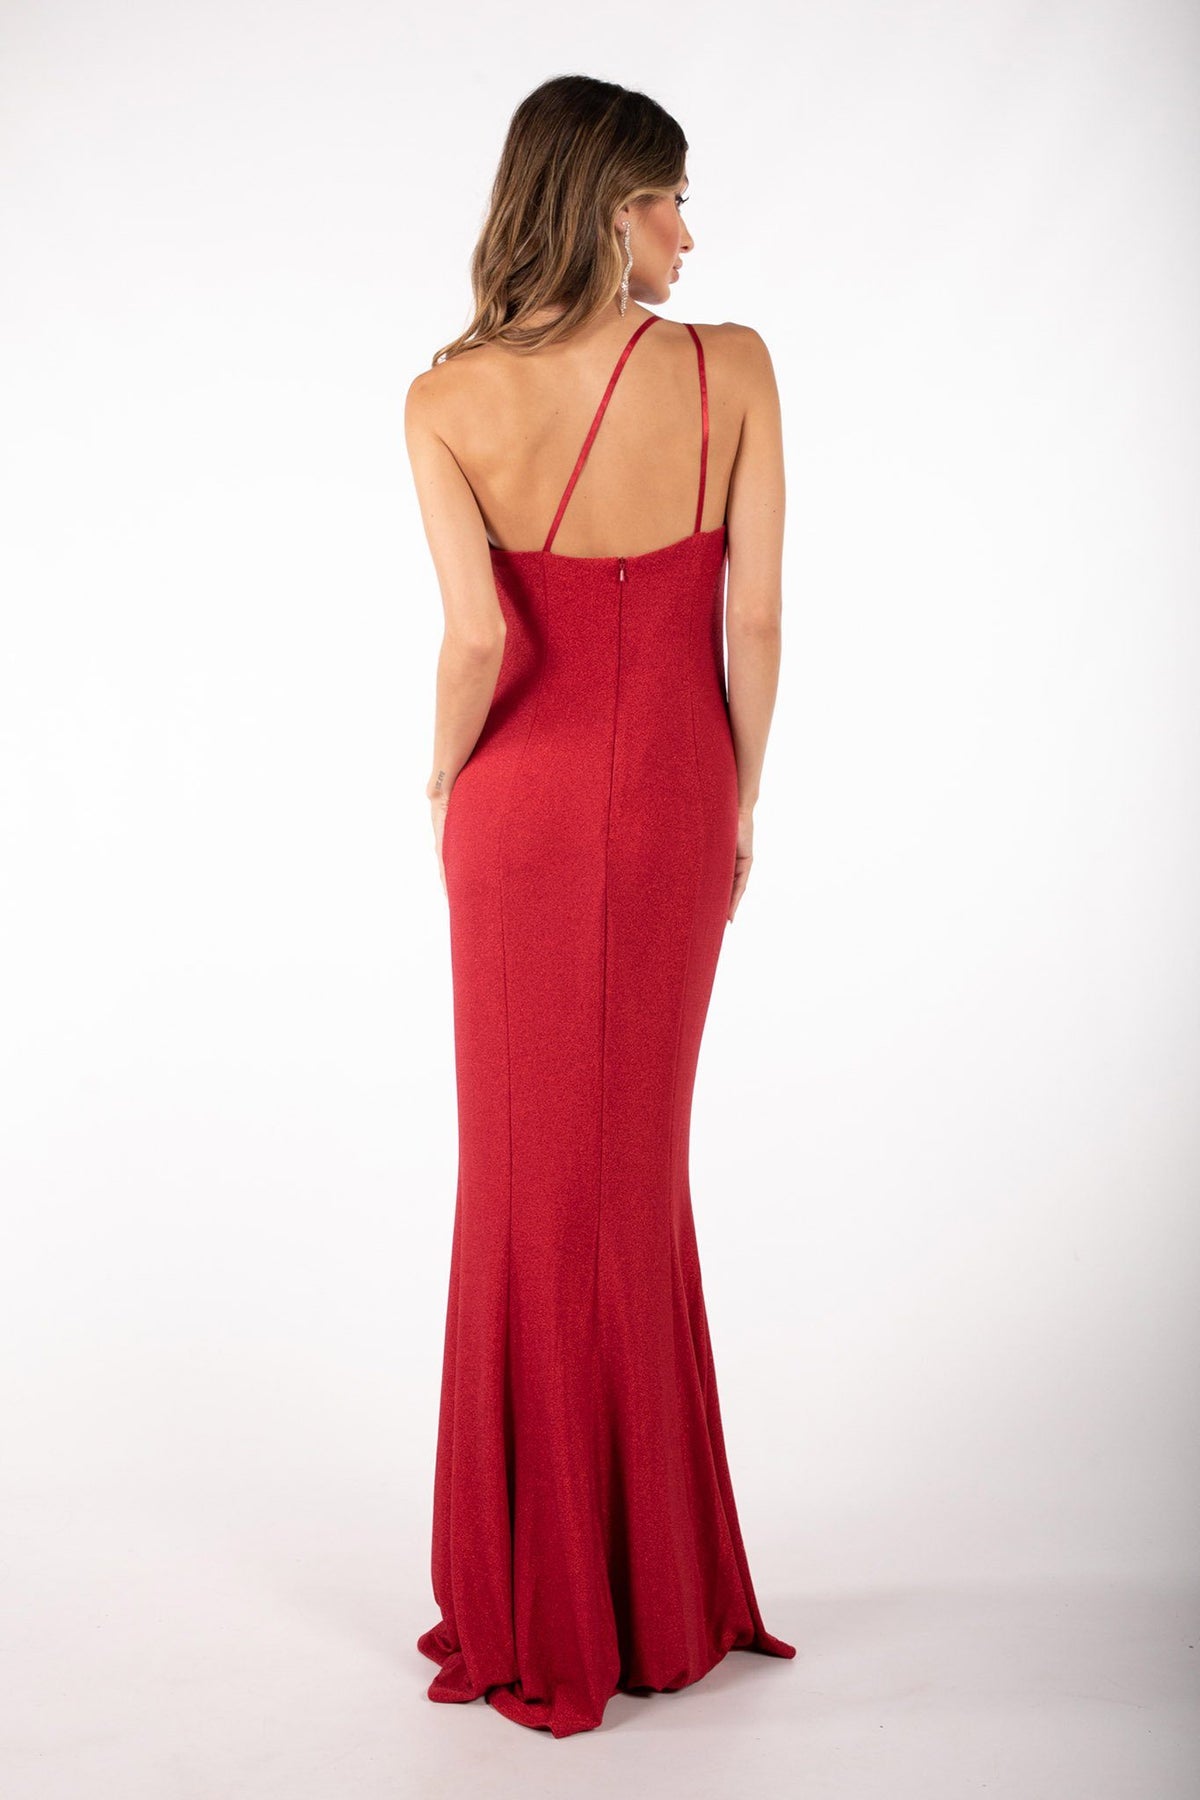 CALI One Shoulder Maxi Dress - Shimmer Red – Noodz Boutique